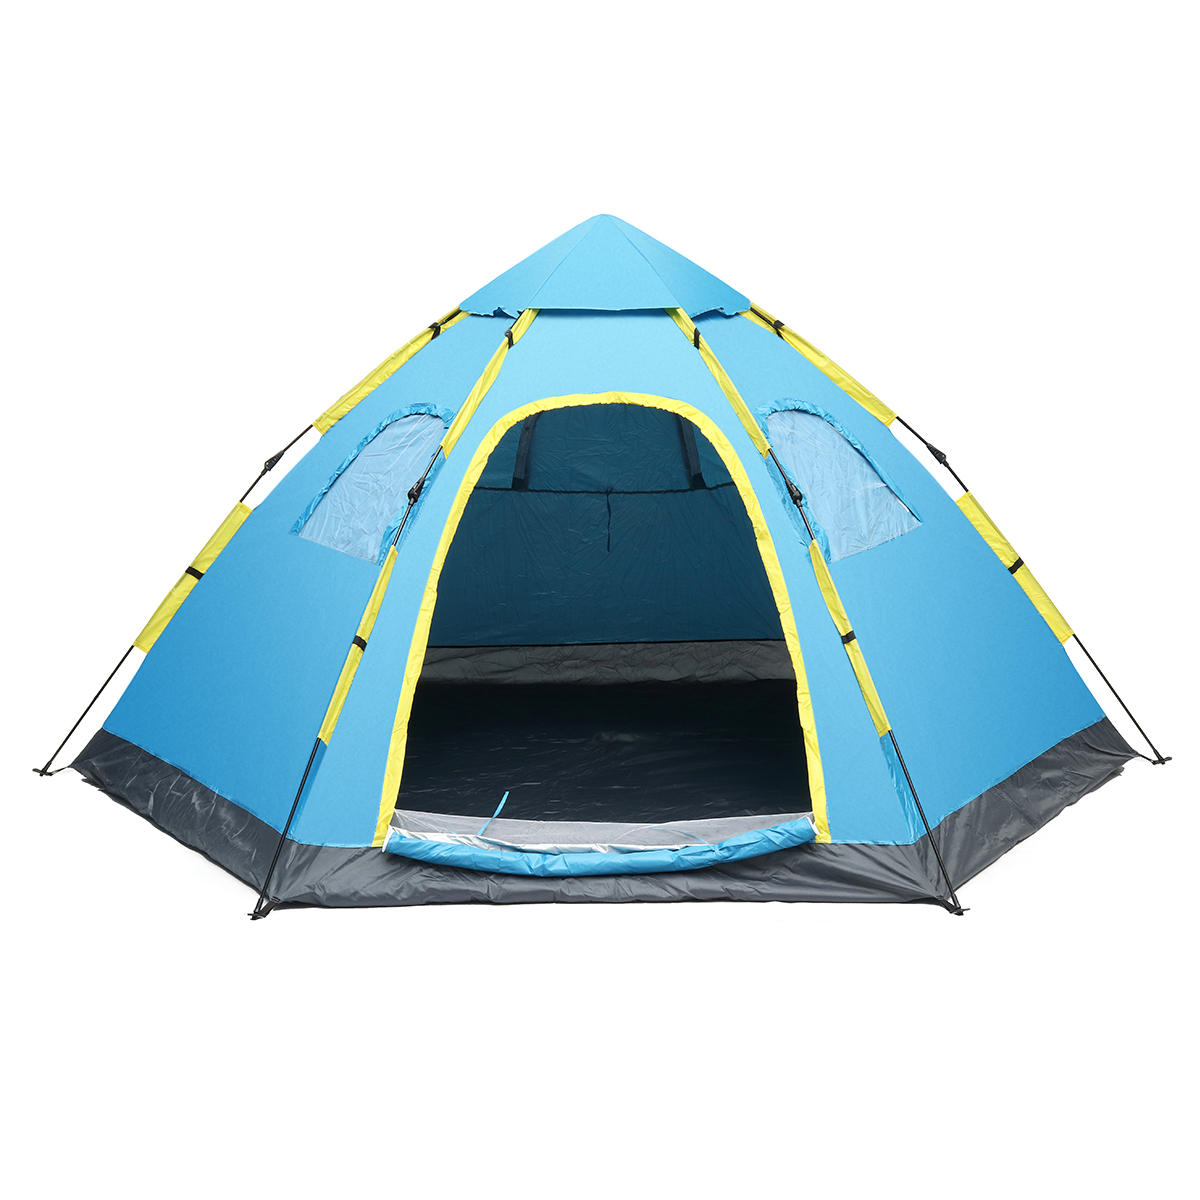 Automatisches Zelt für 5-8 Personen, wasserdicht und UV-beständig, ideal für Outdoor-Camping, Strand- und Familienurlaub.